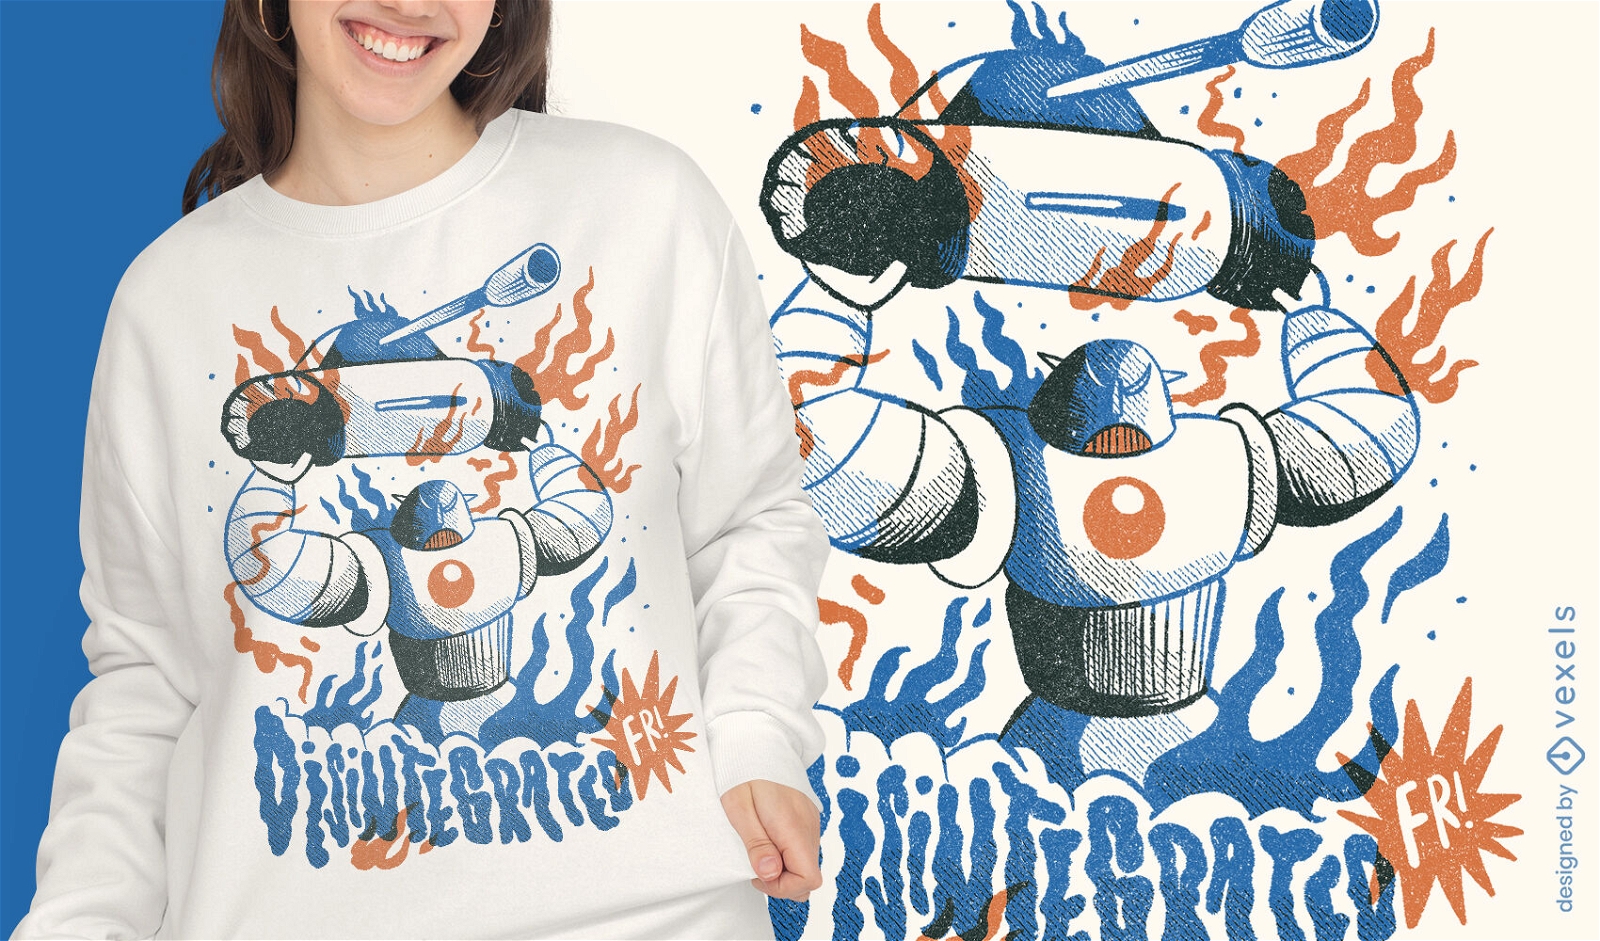 Riesen-Roboter-Panzerkampf-T-Shirt-Design